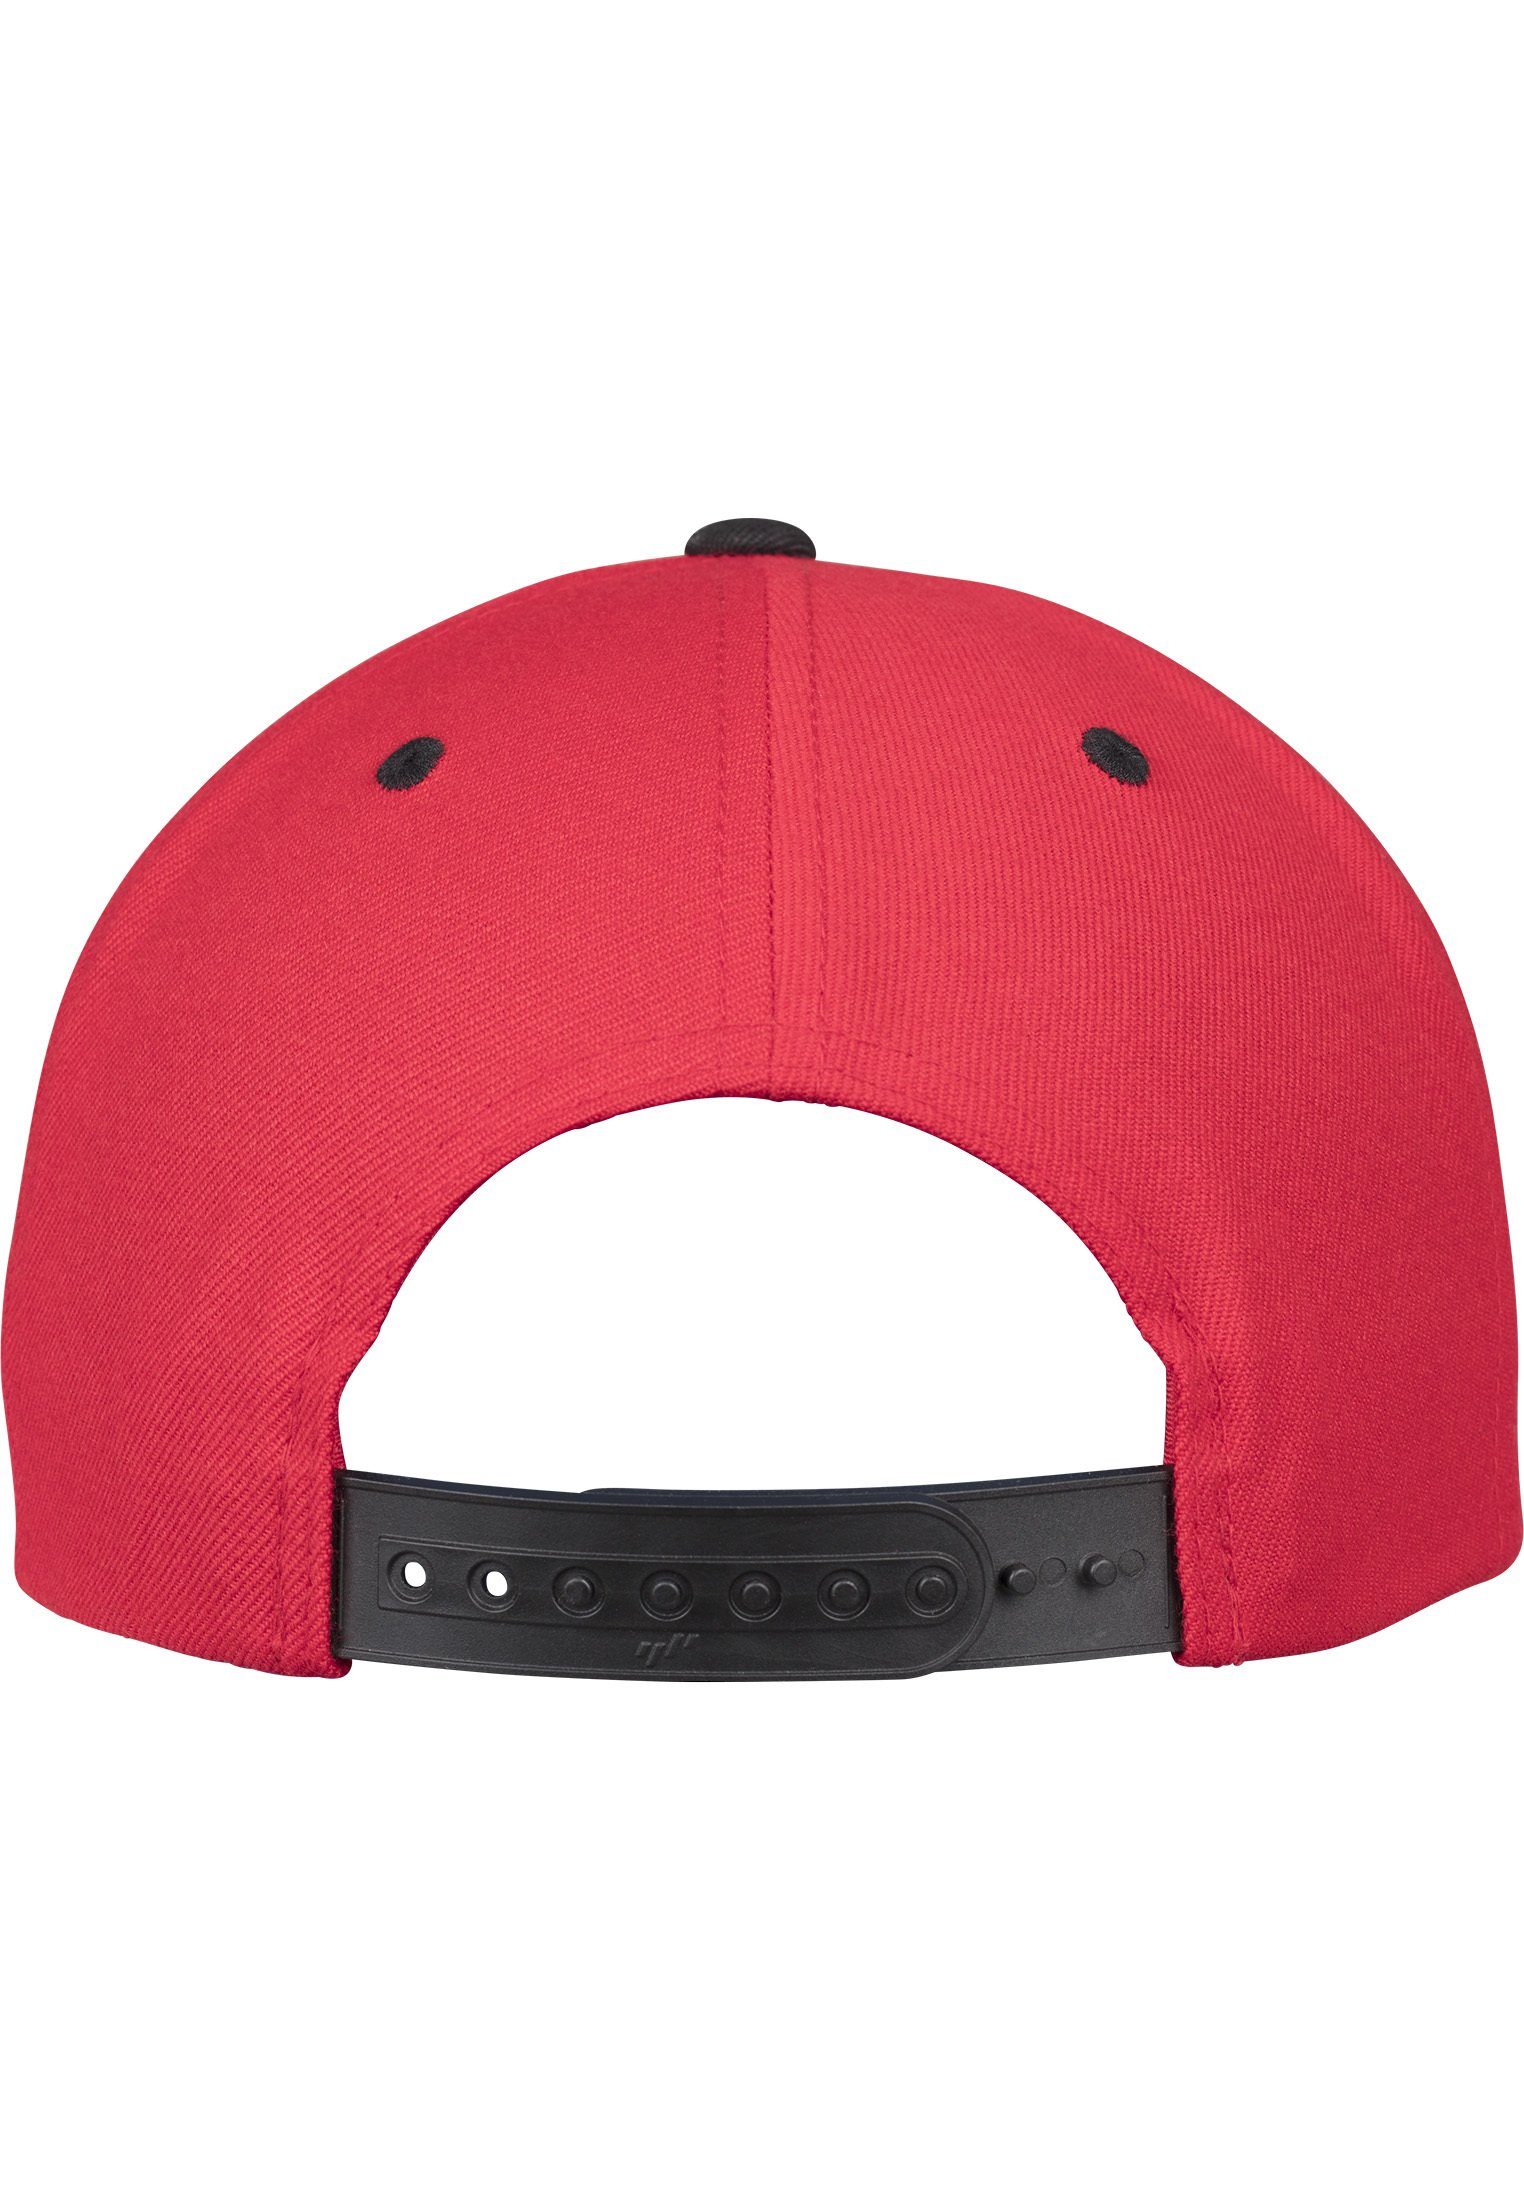 Flexfit Flex Cap Snapback Classic 2-Tone Snapback red/black